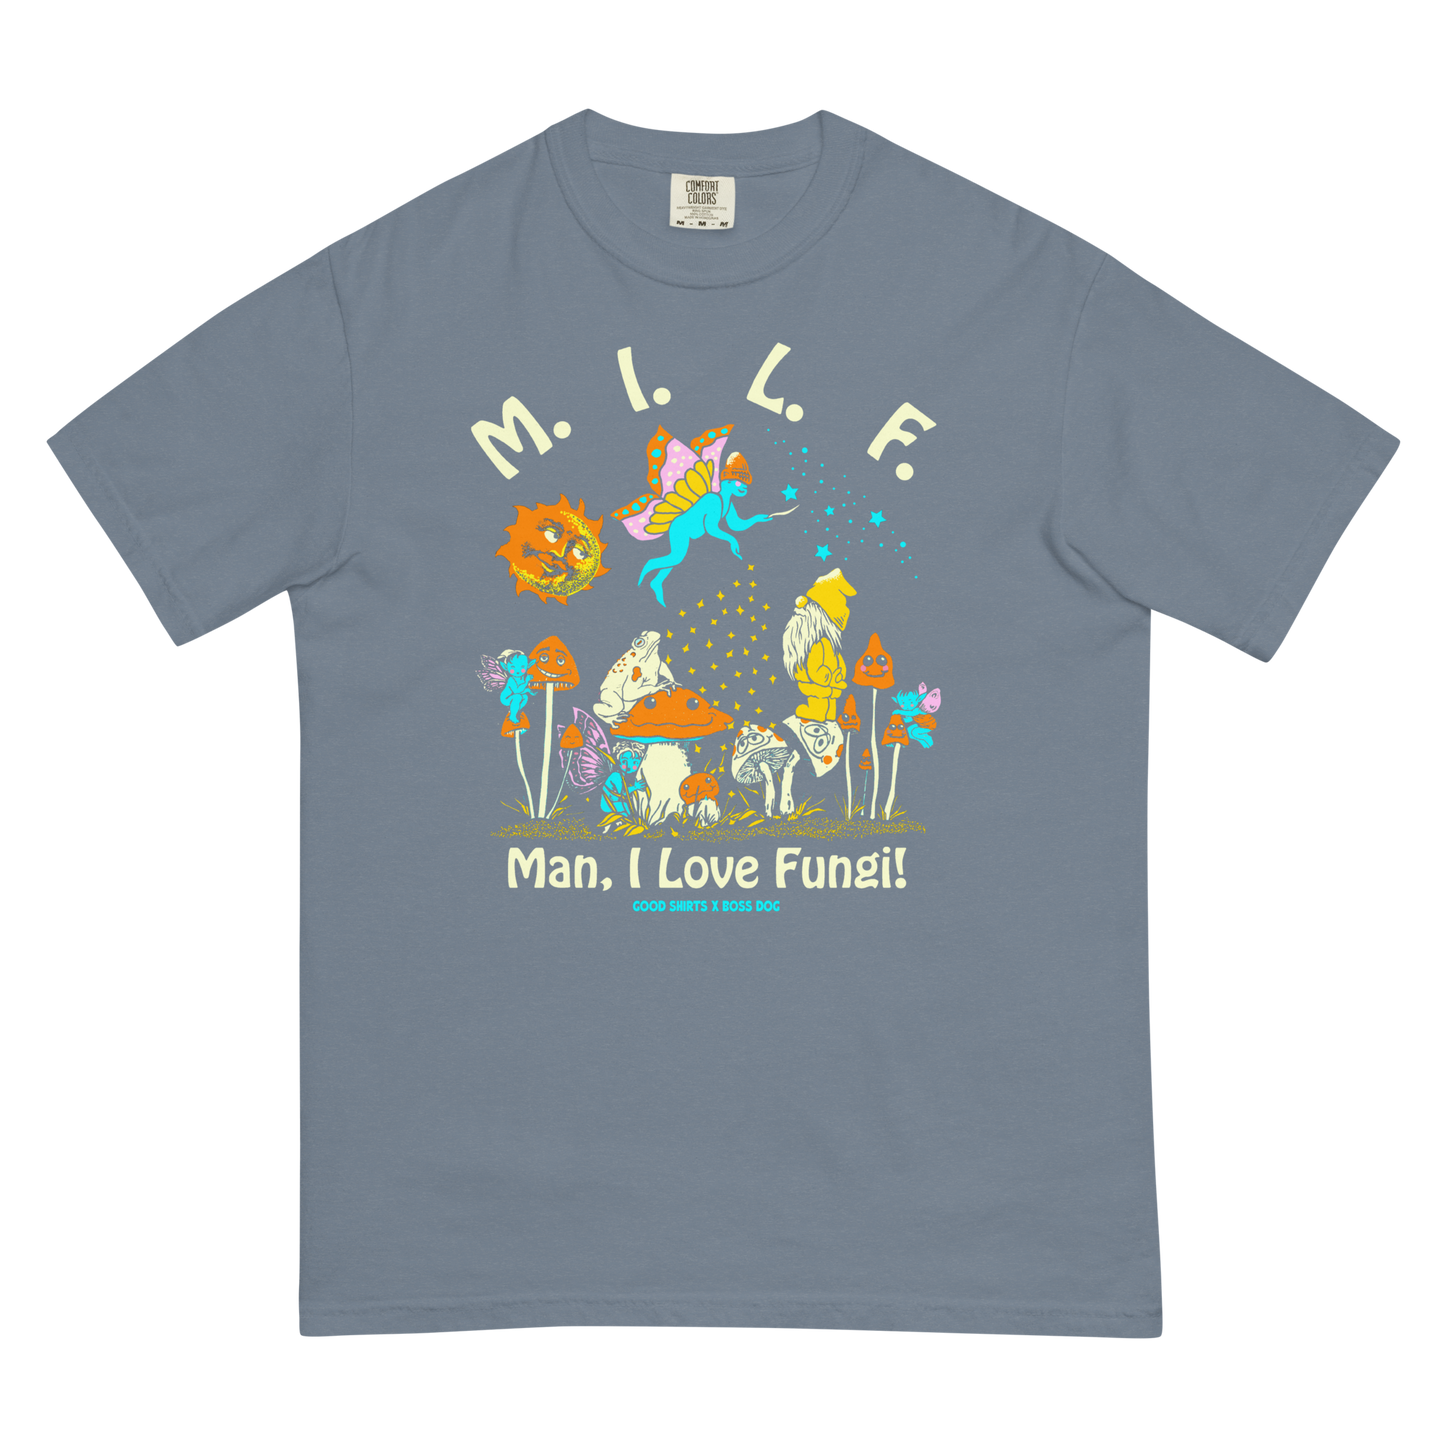 M.I.L.F. (Man I Love Fungi) by Boss Dog x Good Shirts.